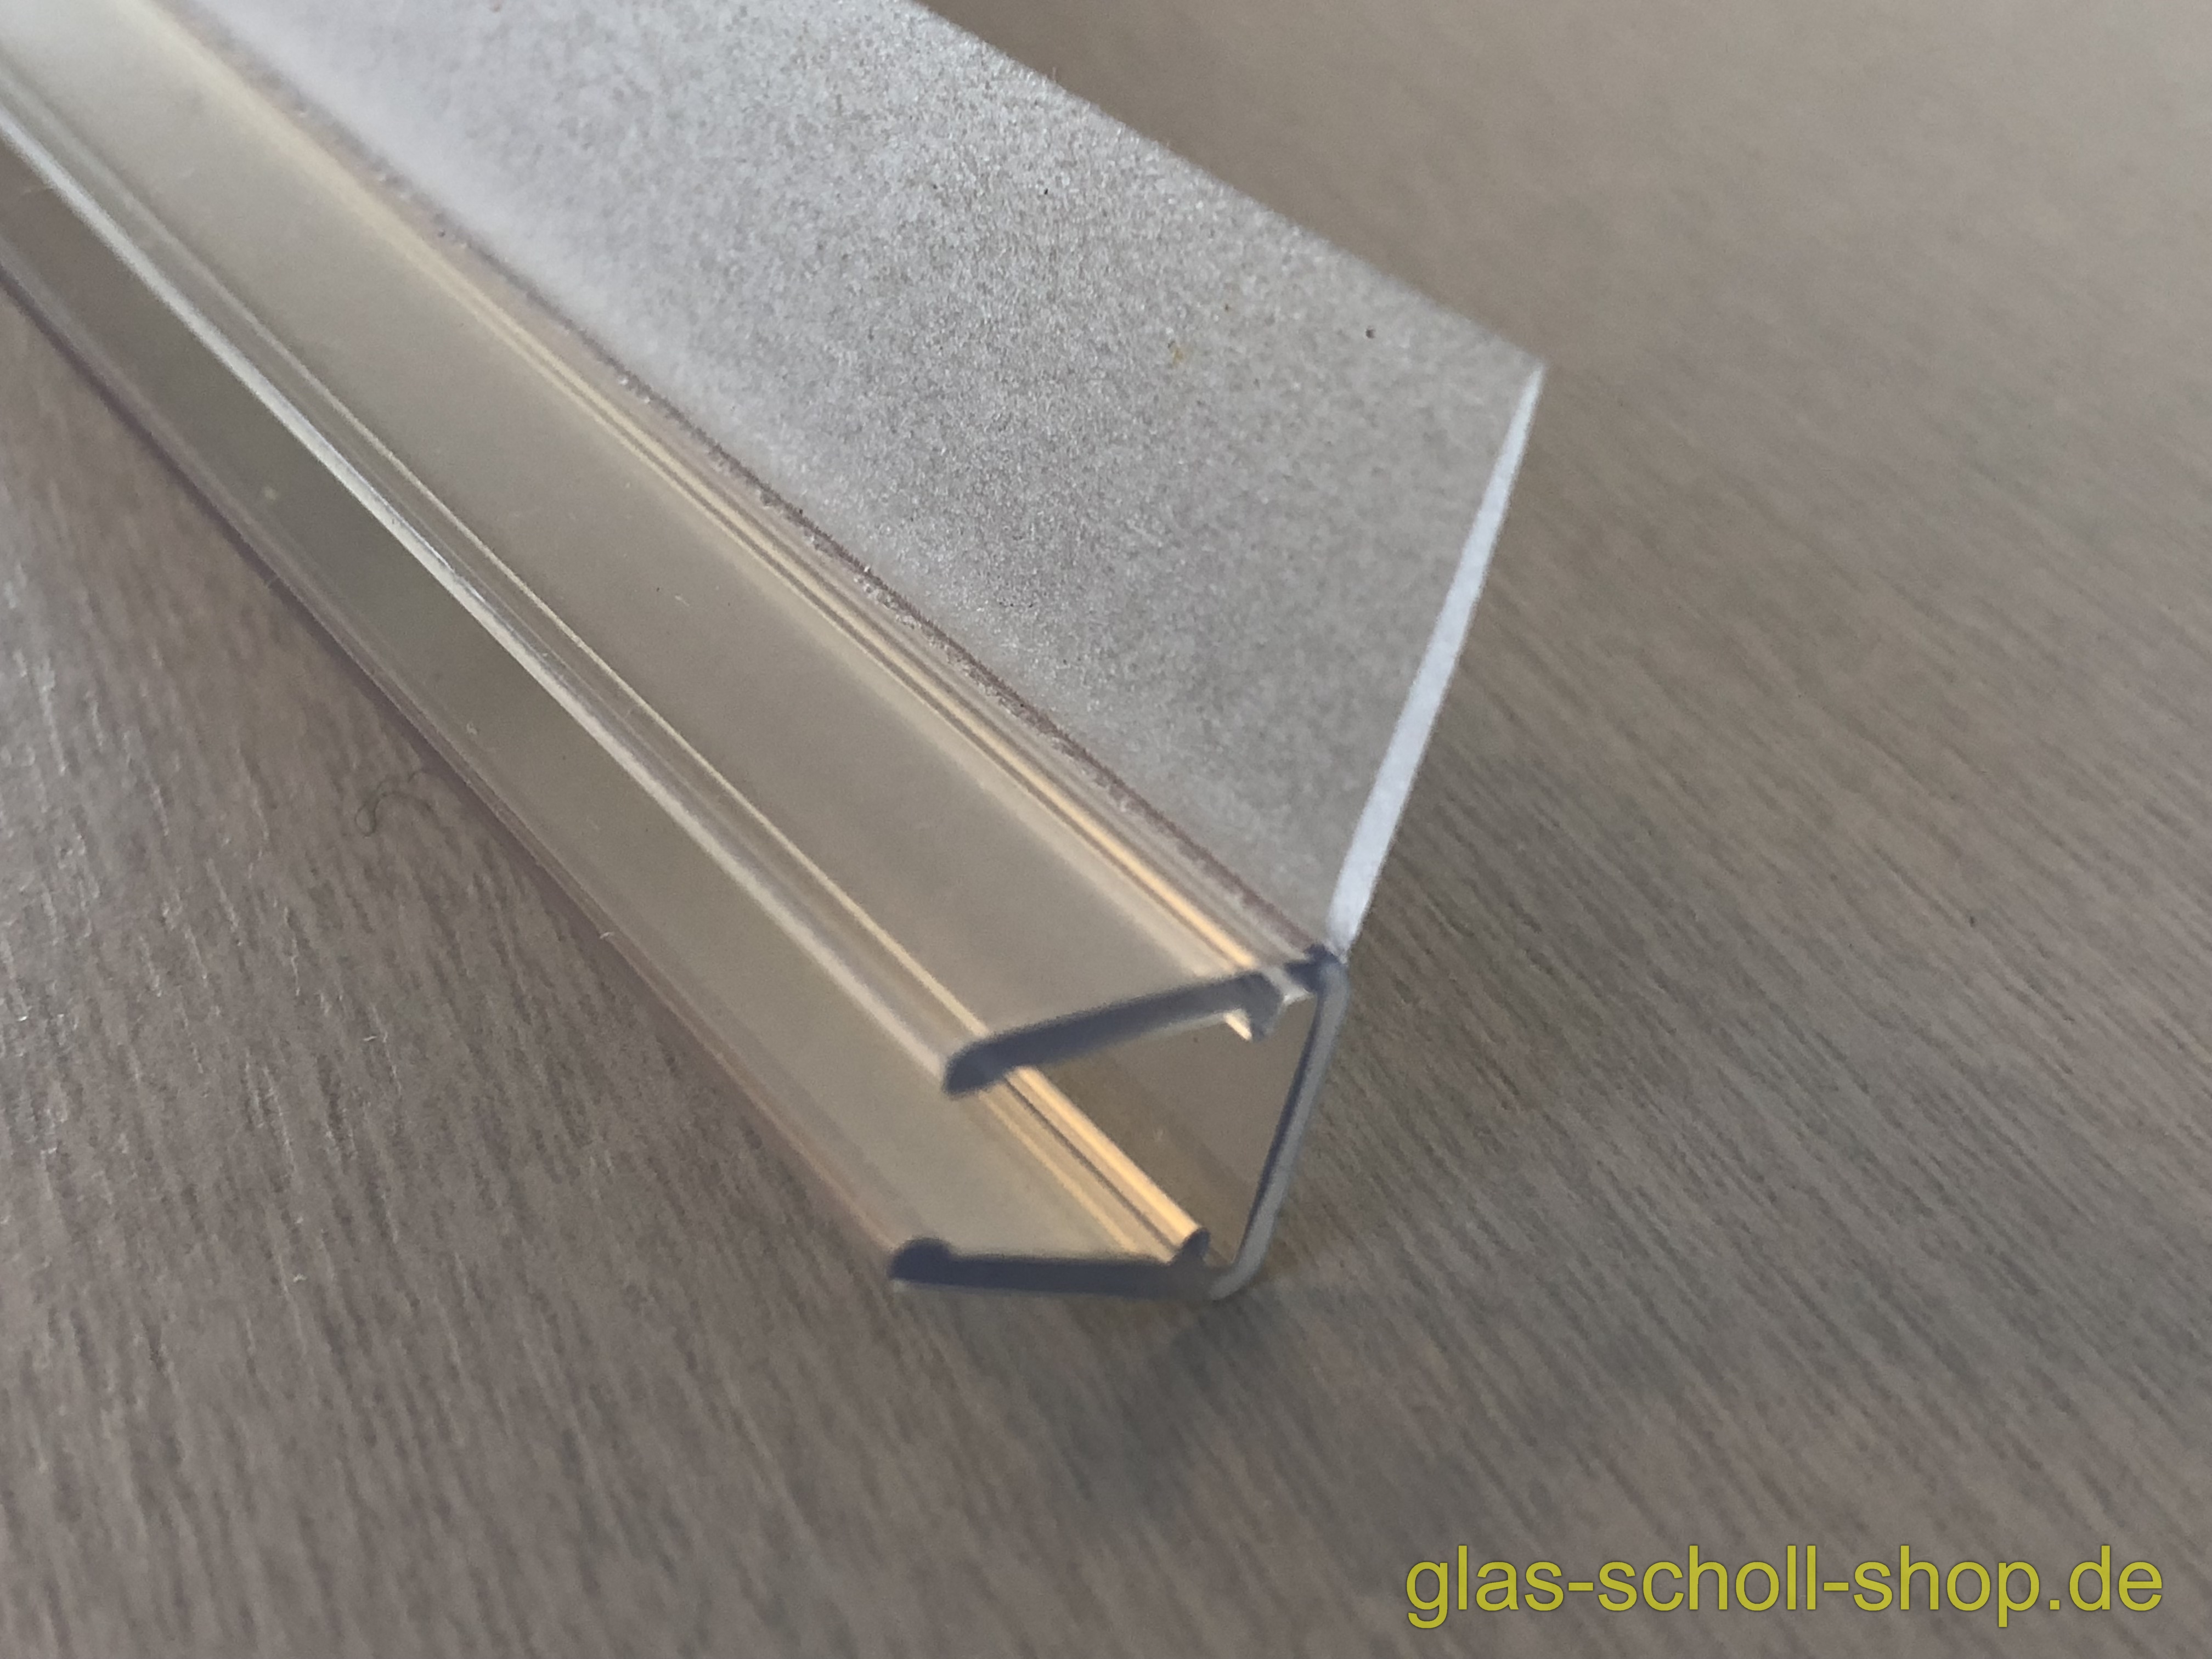 Glas Scholl Webshop  Dichtprofil für 15mm versetzte Schiebetüren